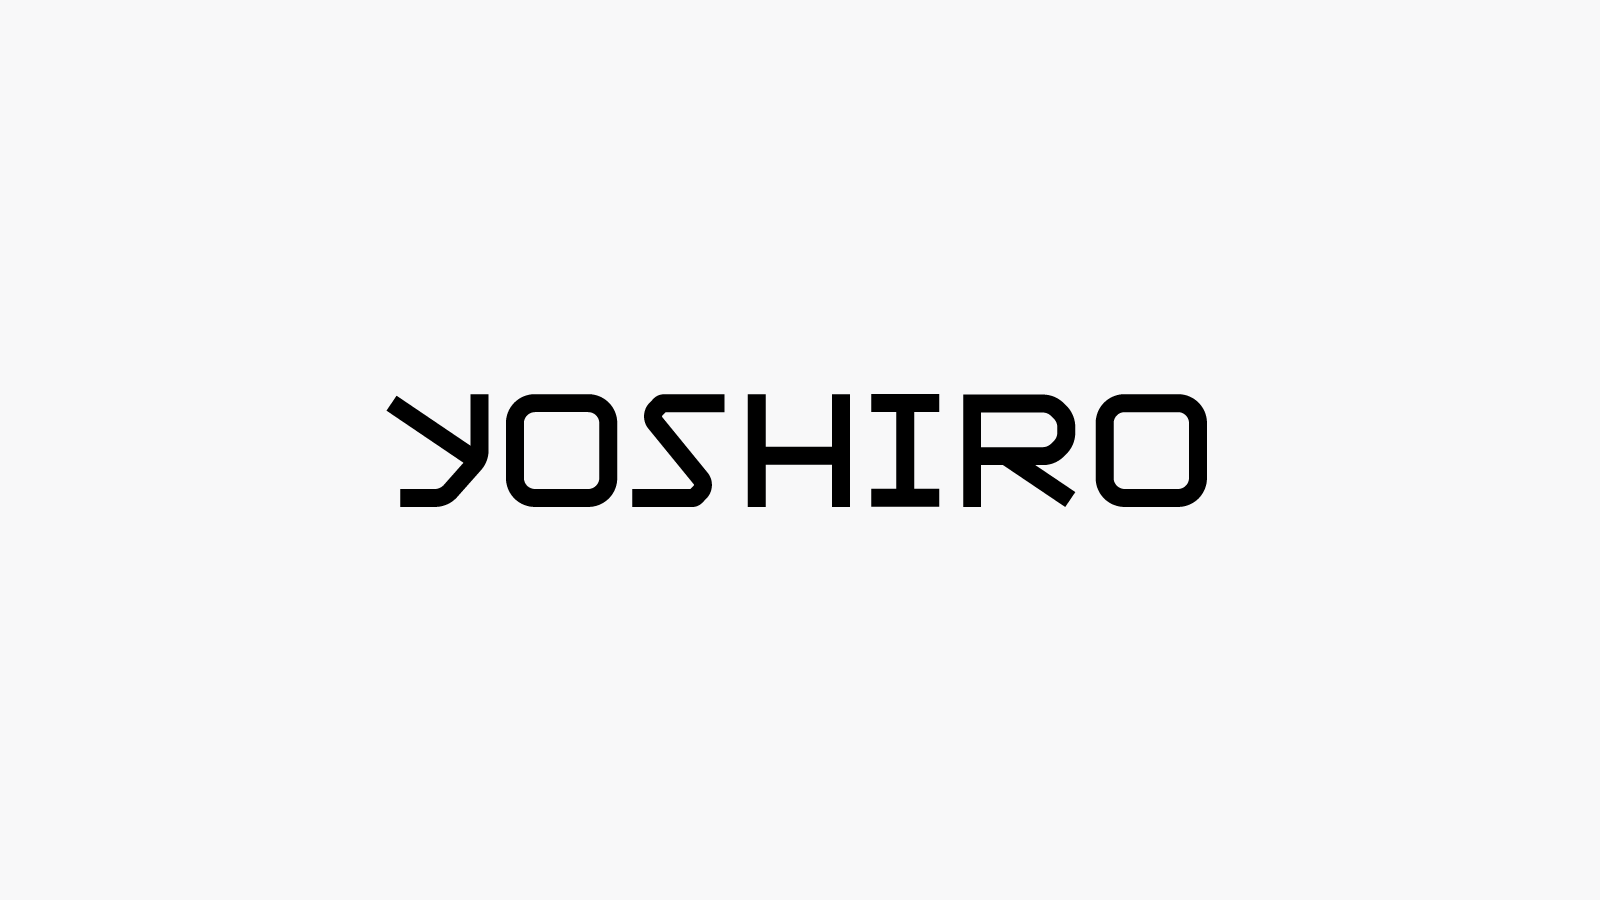 Yoshiro